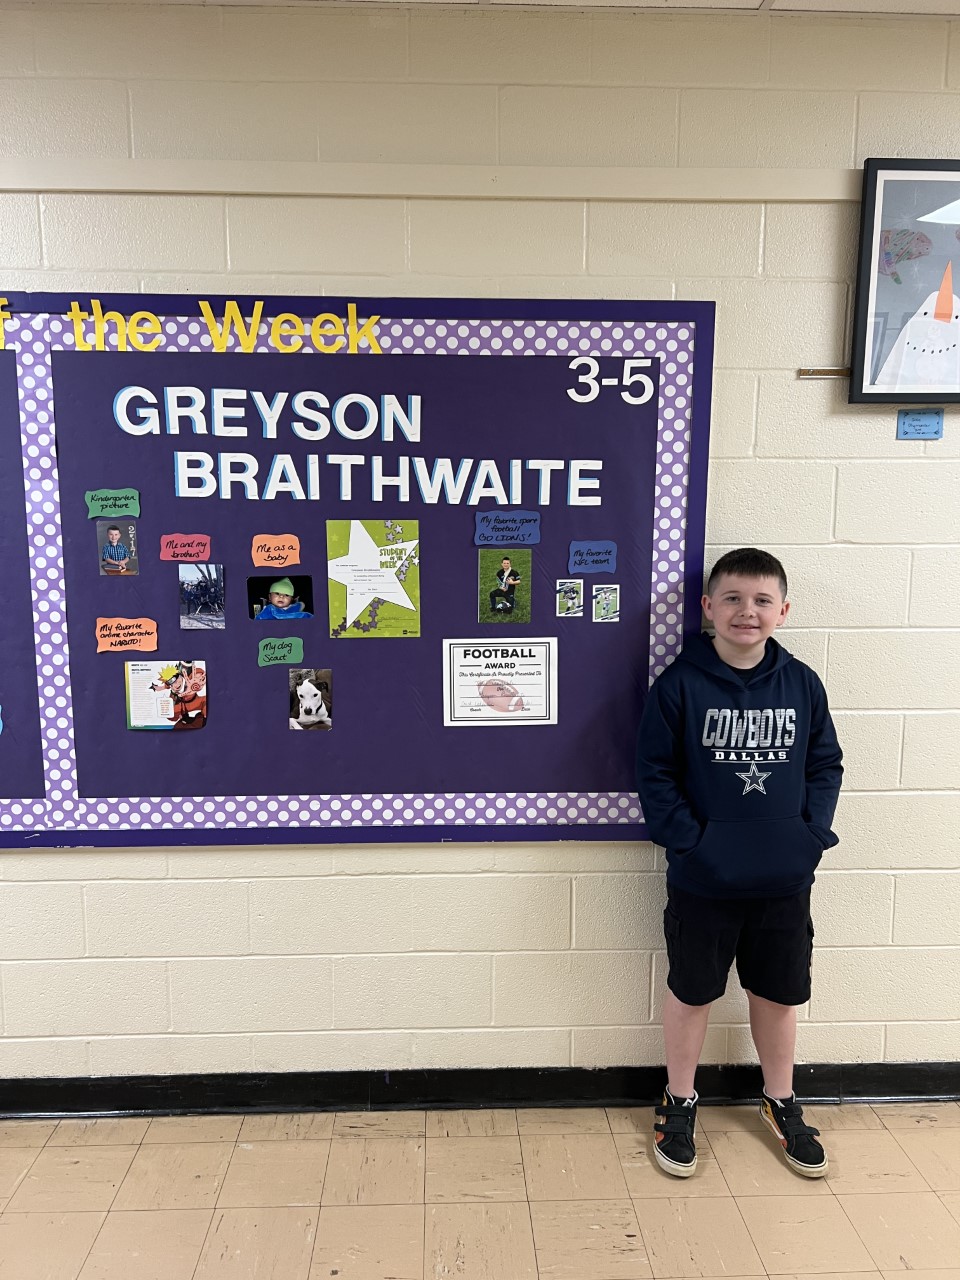 Greyson Braithwaite